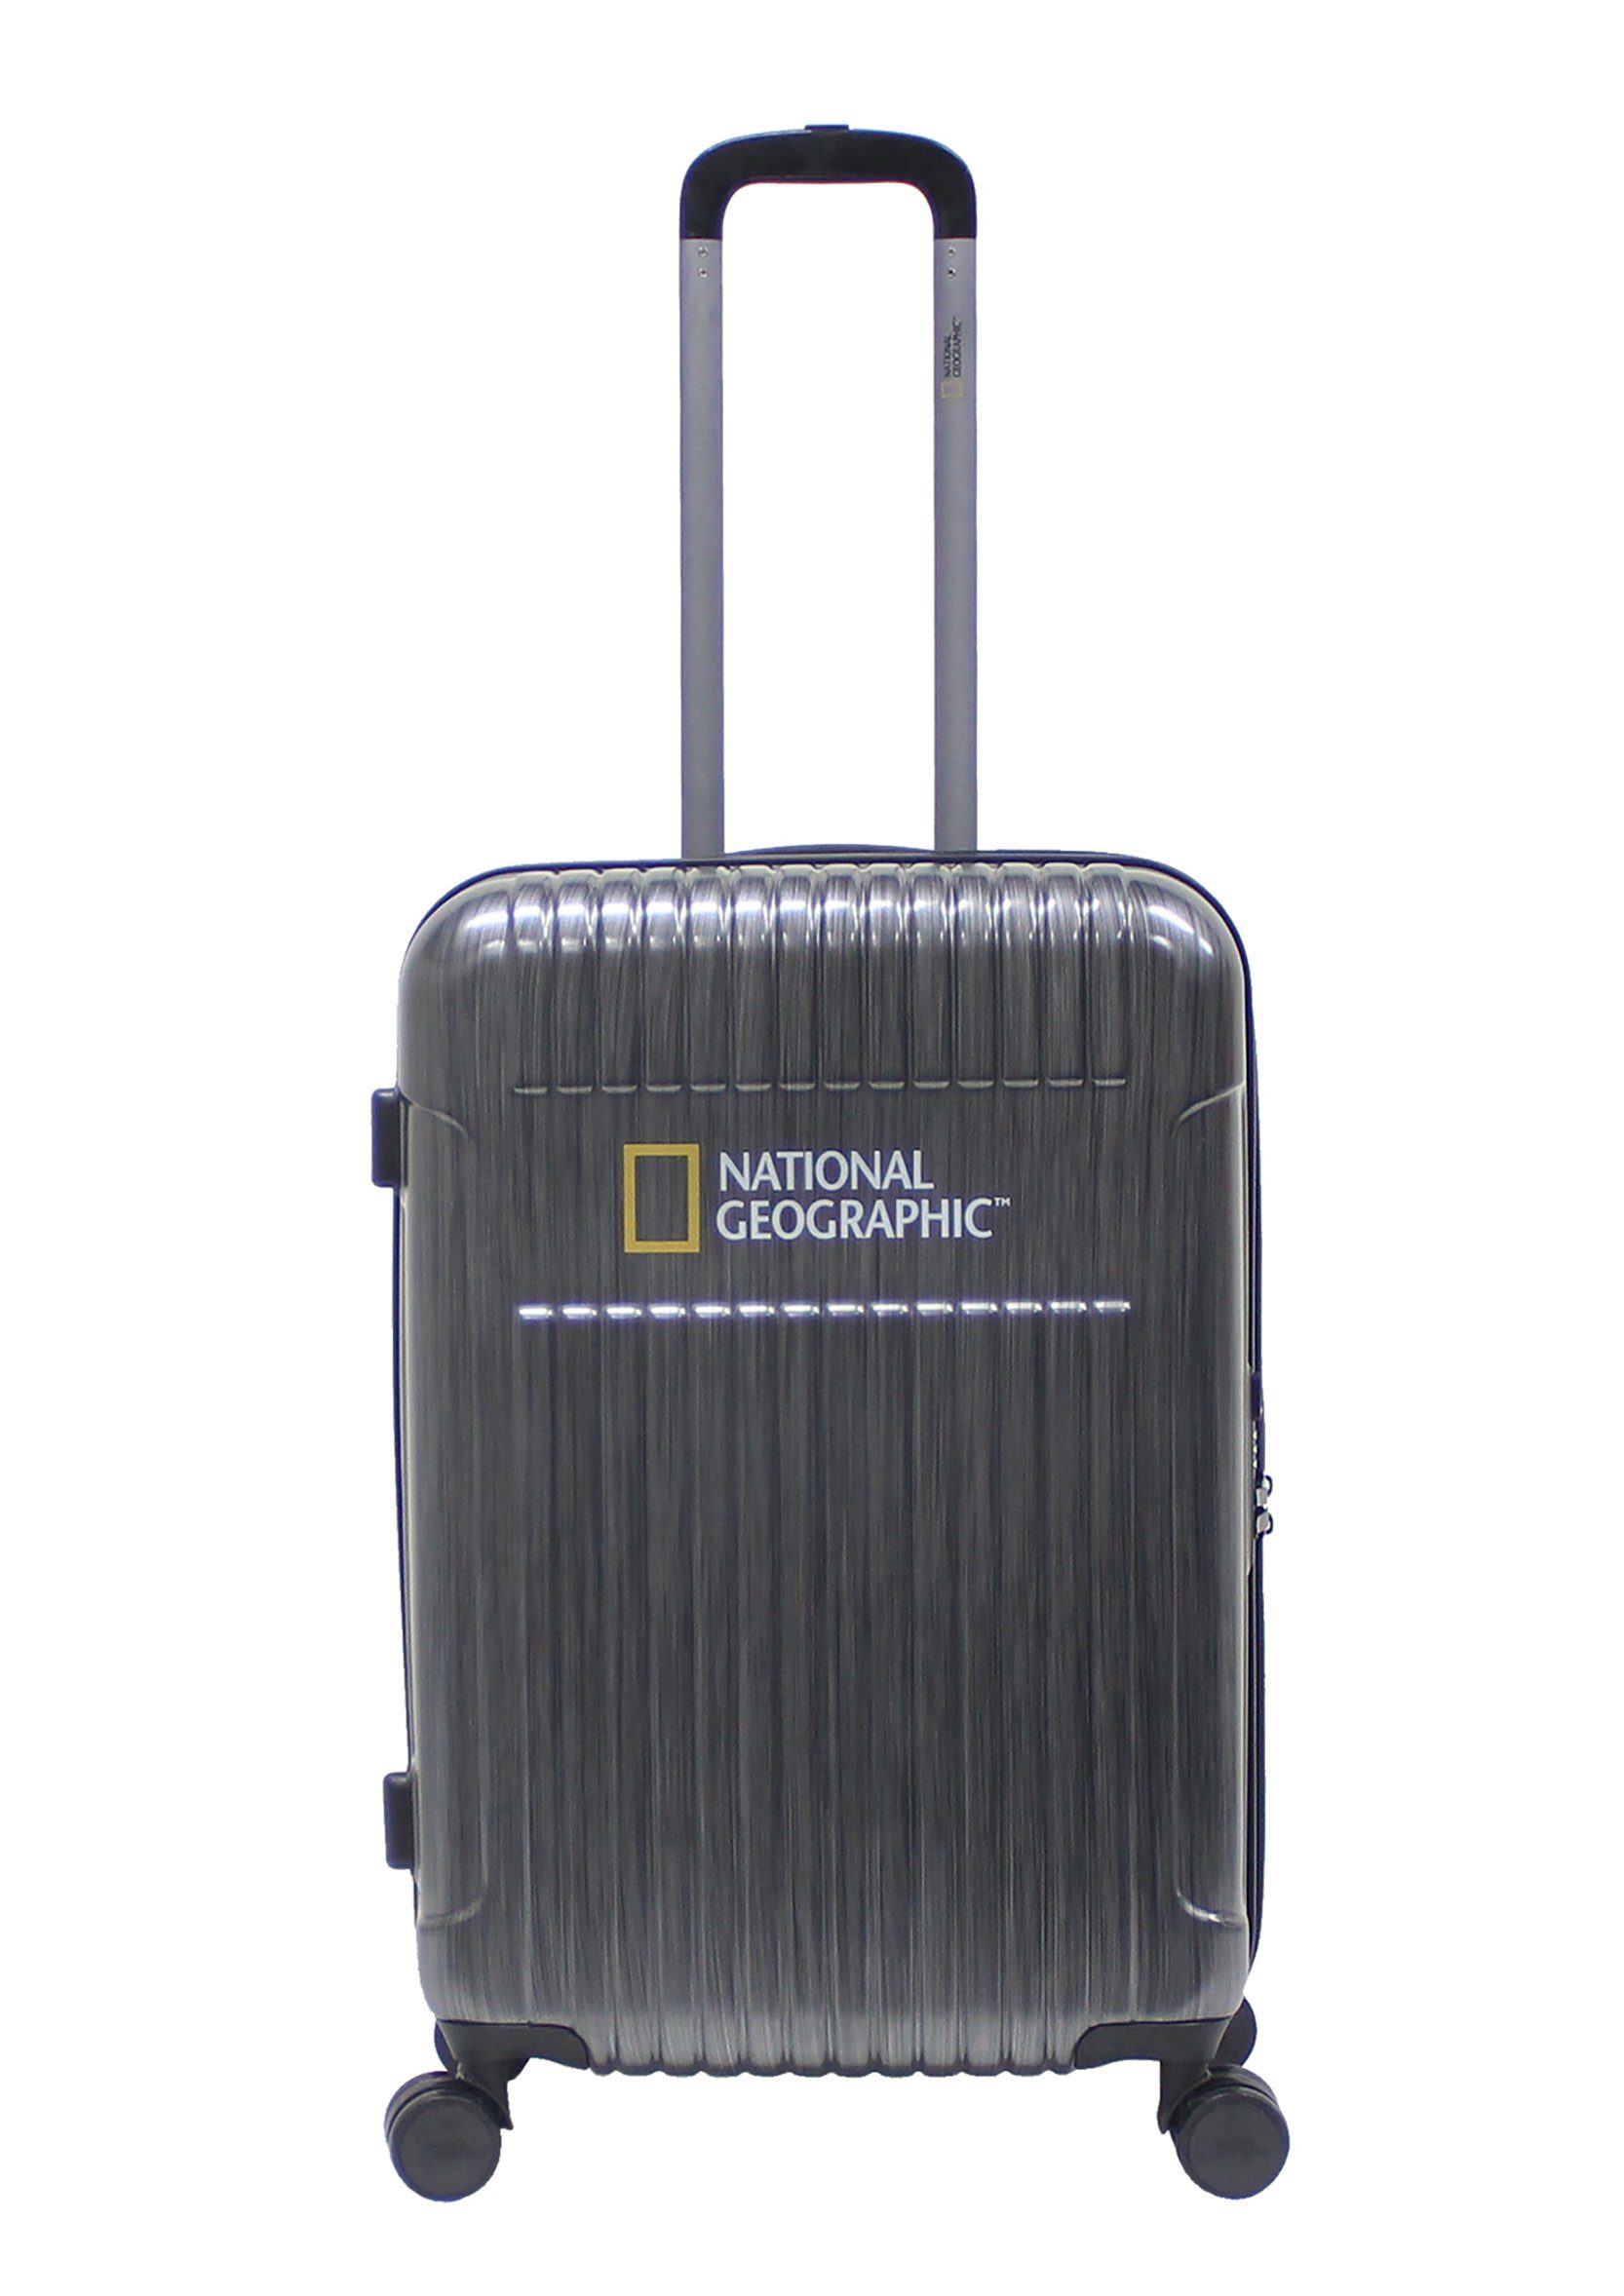 NATIONAL GEOGRAPHIC Koffer Transit, mit einzigartigem Kratzeffekt